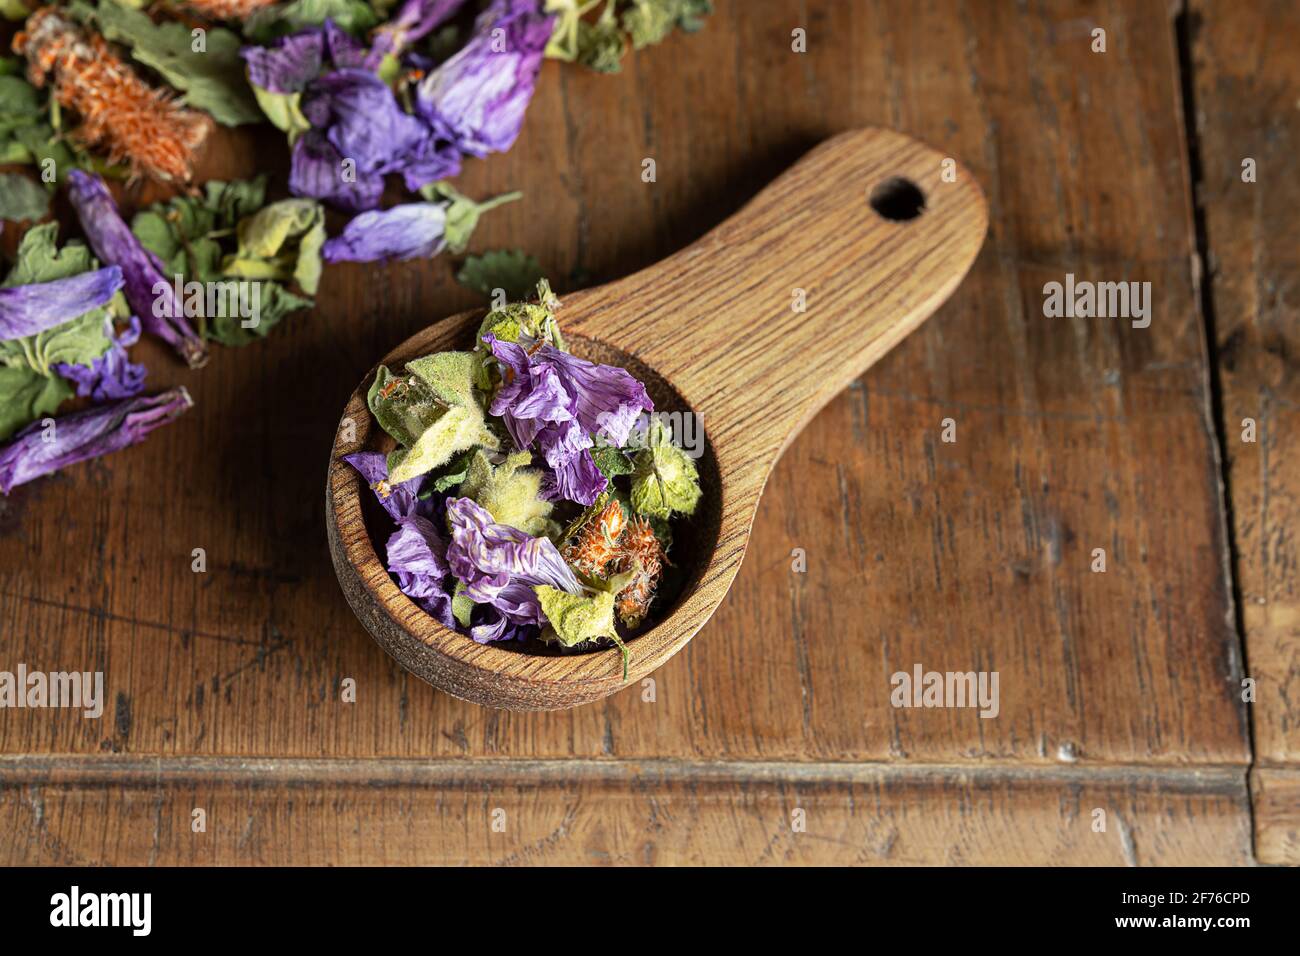 Tosa el té de hierbas en una cuchara de madera - tomillo, anís verde, hiedra molida, brote de pino, flores de malvaina sobre un fondo de madera Foto de stock